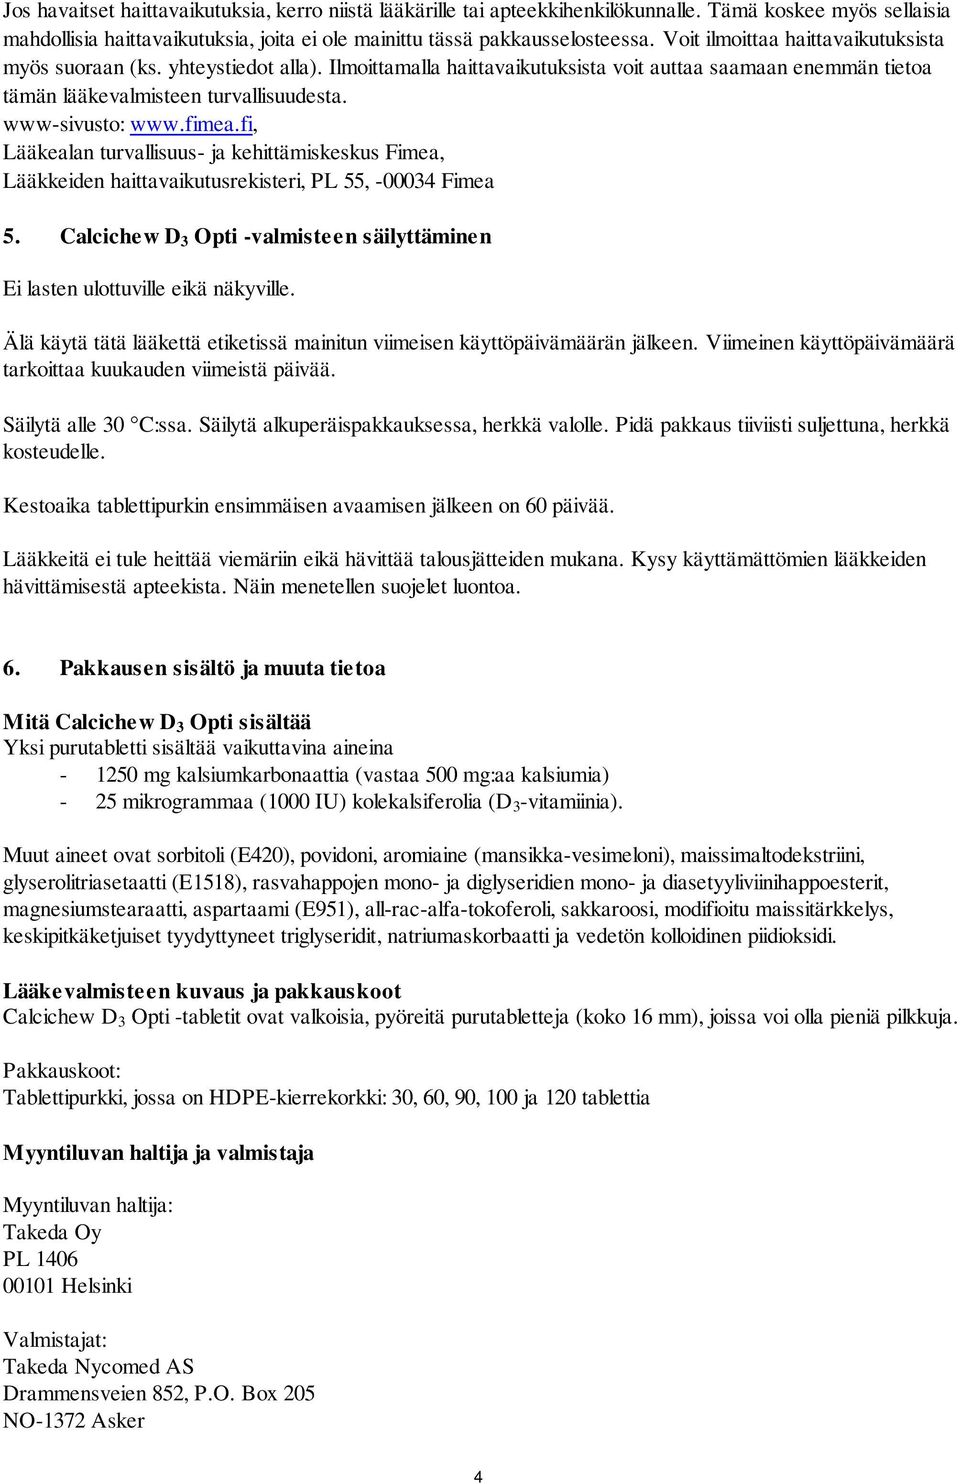 fimea.fi, Lääkealan turvallisuus- ja kehittämiskeskus Fimea, Lääkkeiden haittavaikutusrekisteri, PL 55, -00034 Fimea 5.